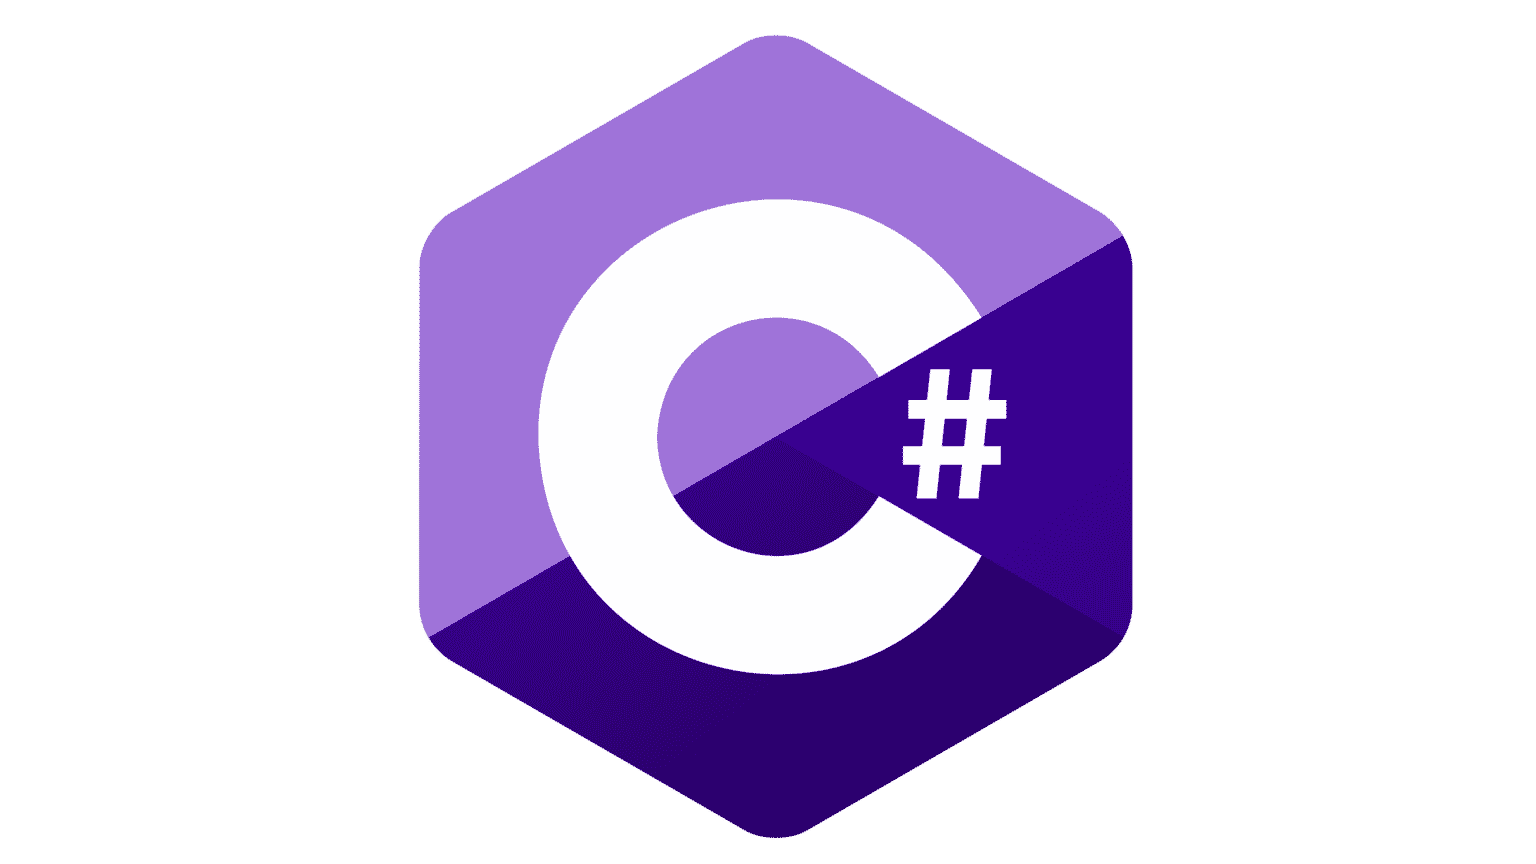 C image source. Языки программирования c c++. C Sharp. C++ язык программирования логотип. Язык программирования си Шарп.